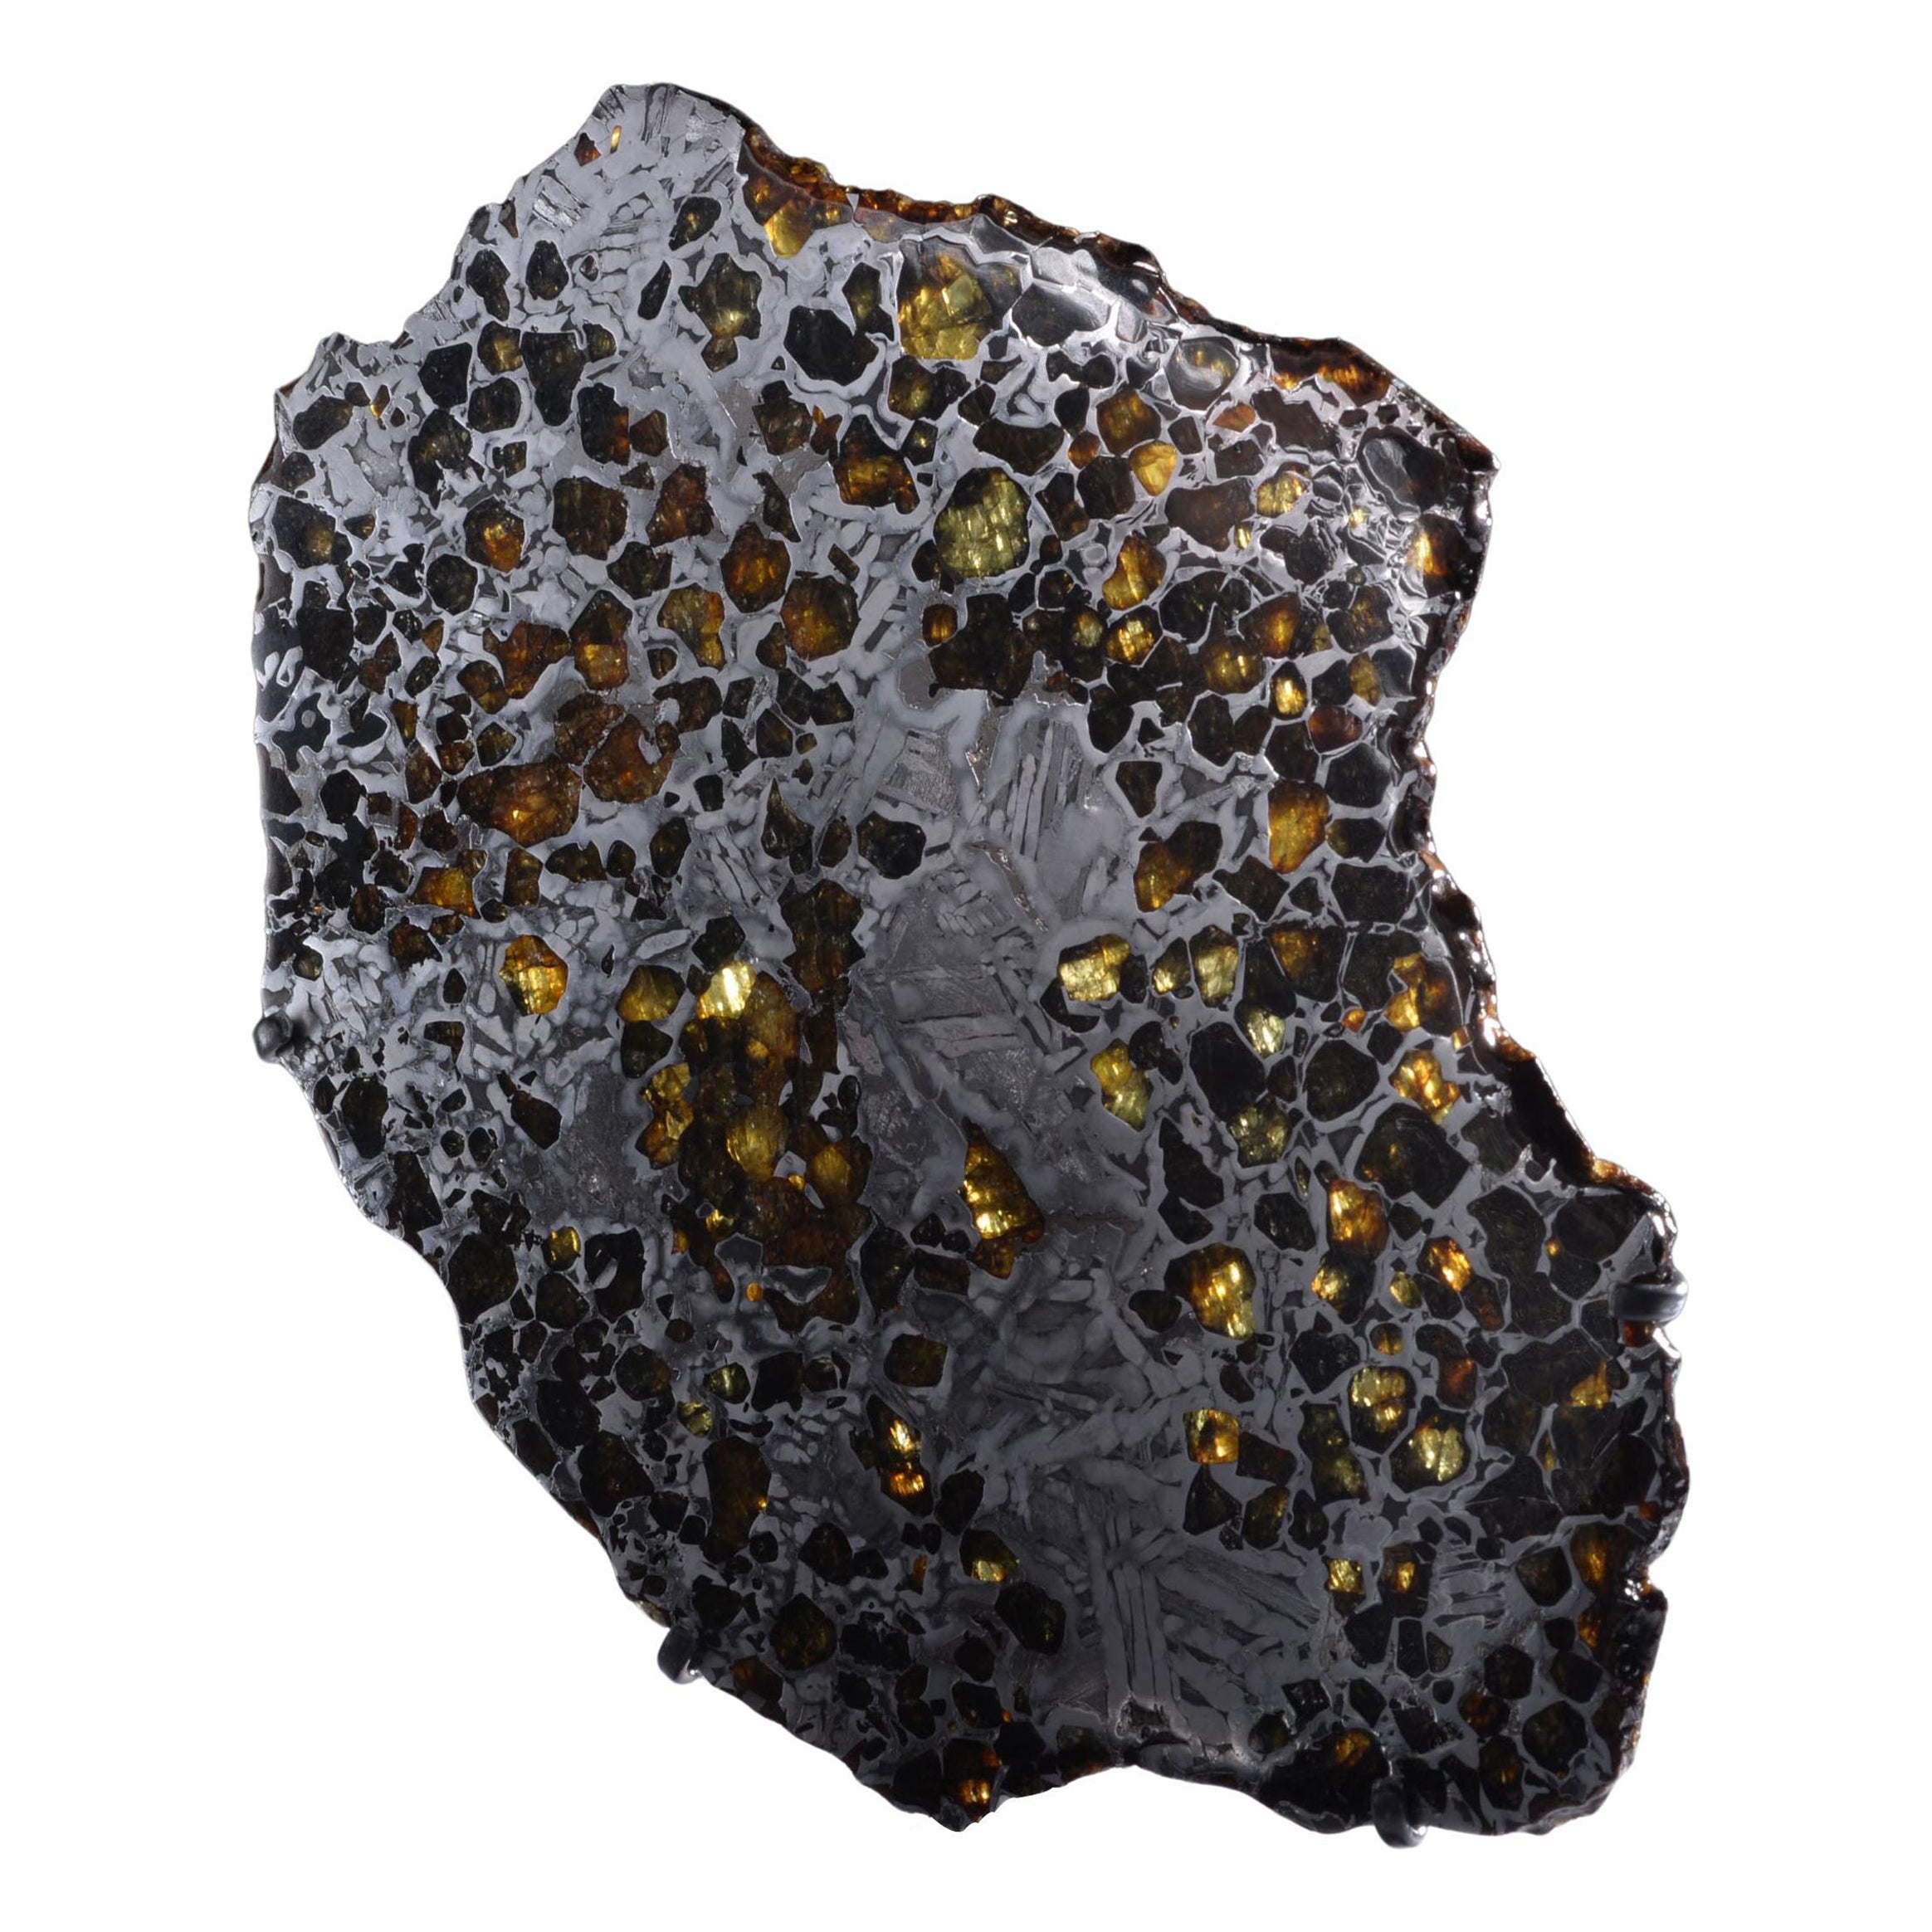 Cross Section of the Seymchan Meteorit